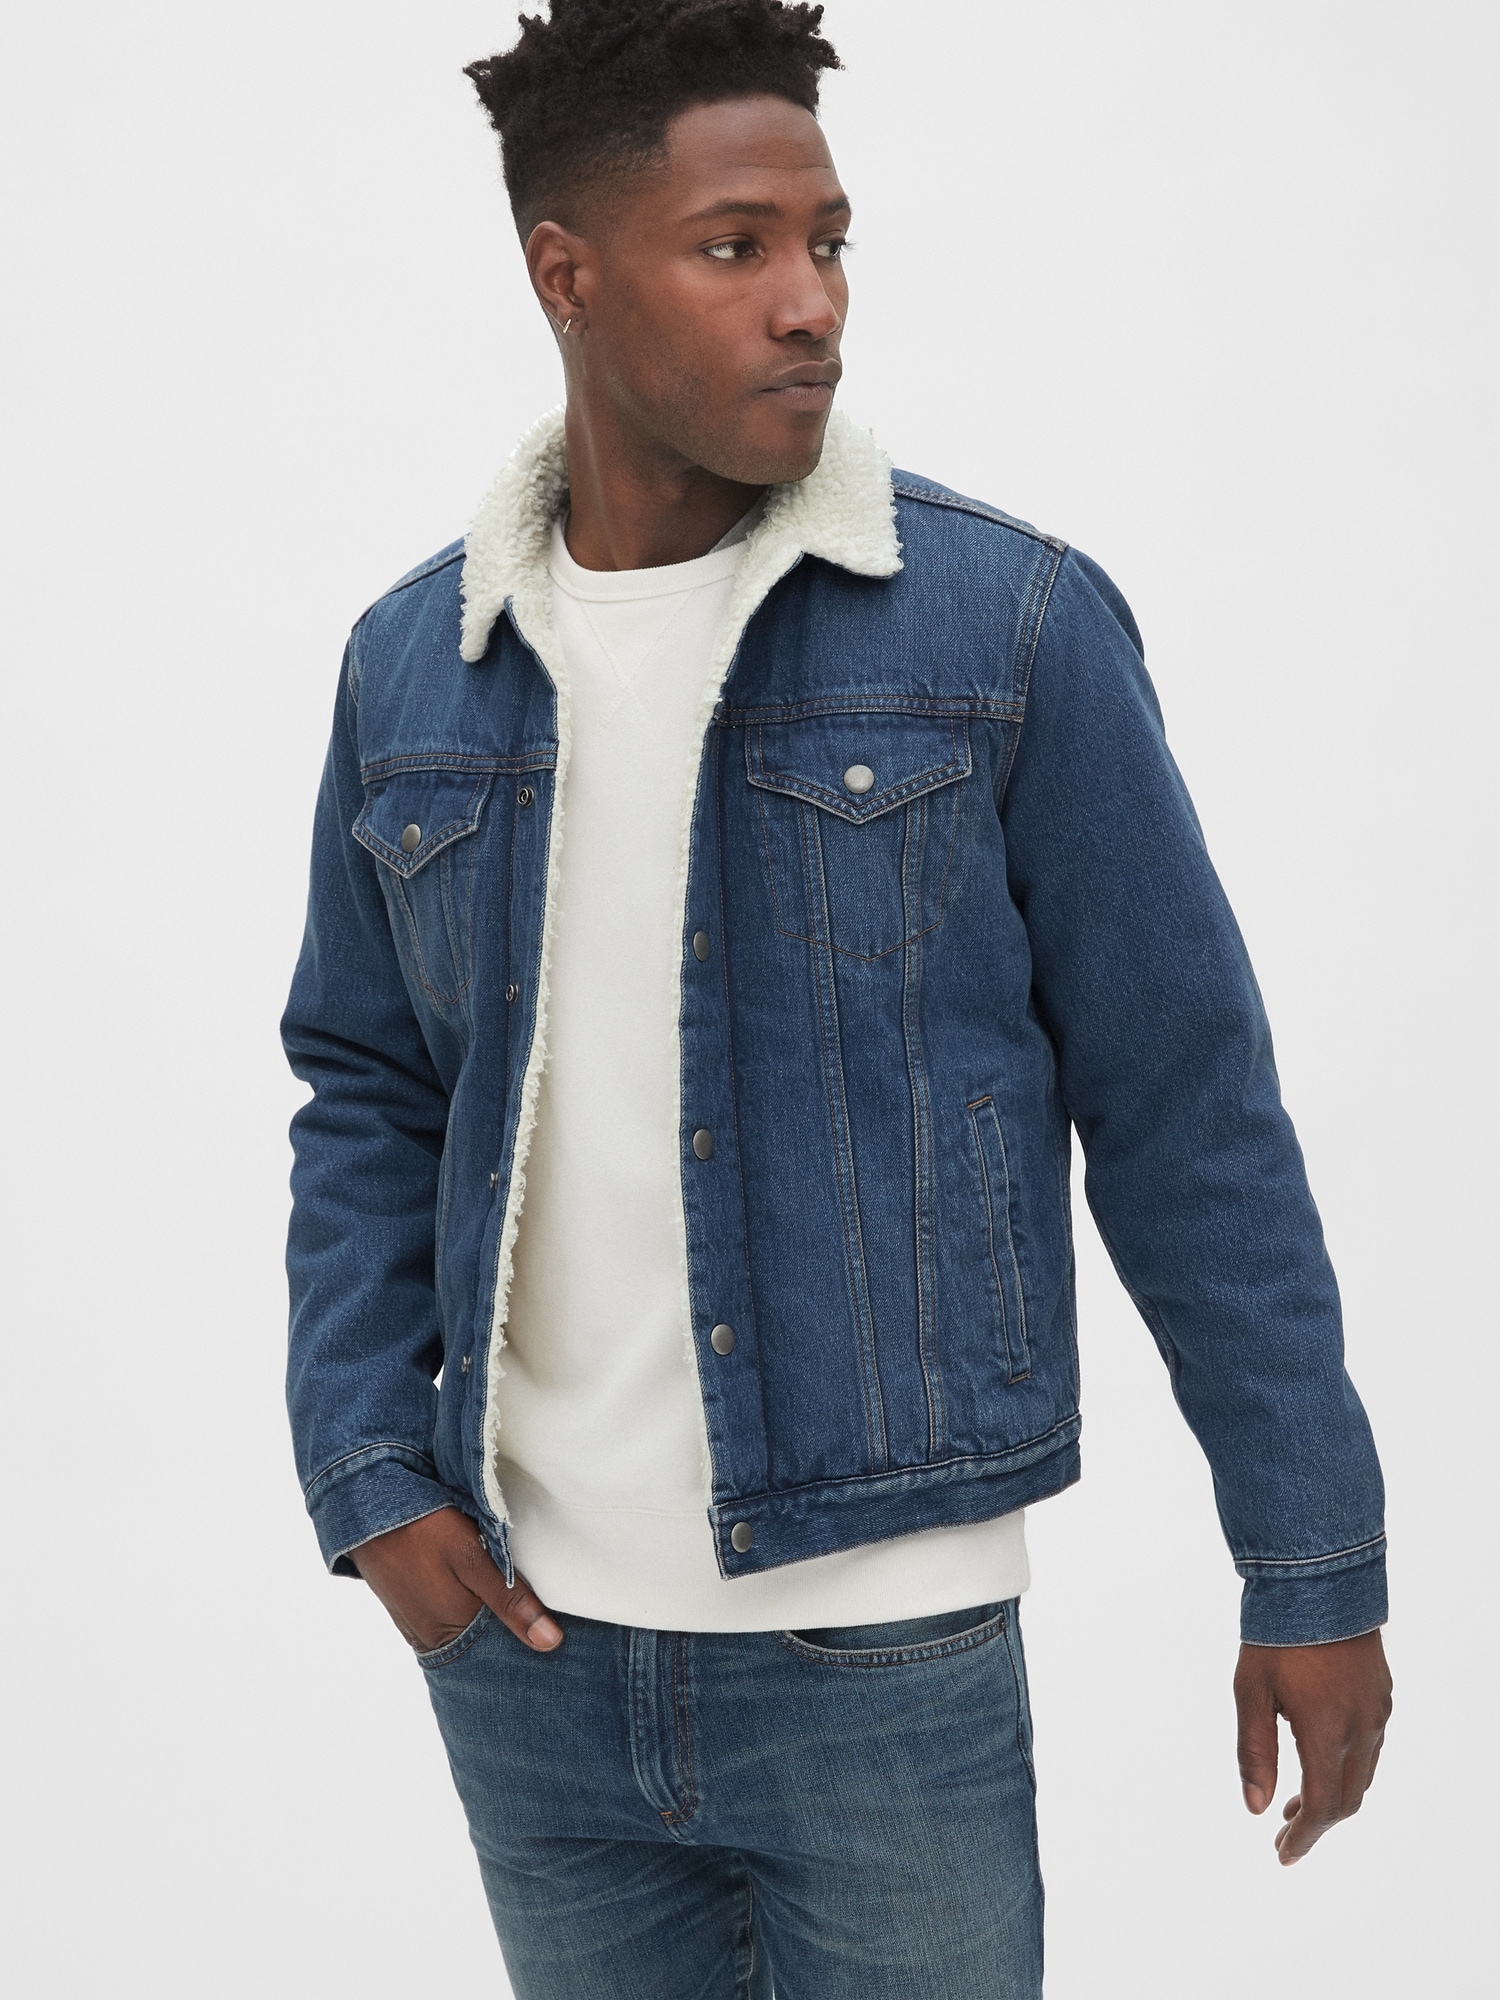 blue jean sherpa jacket